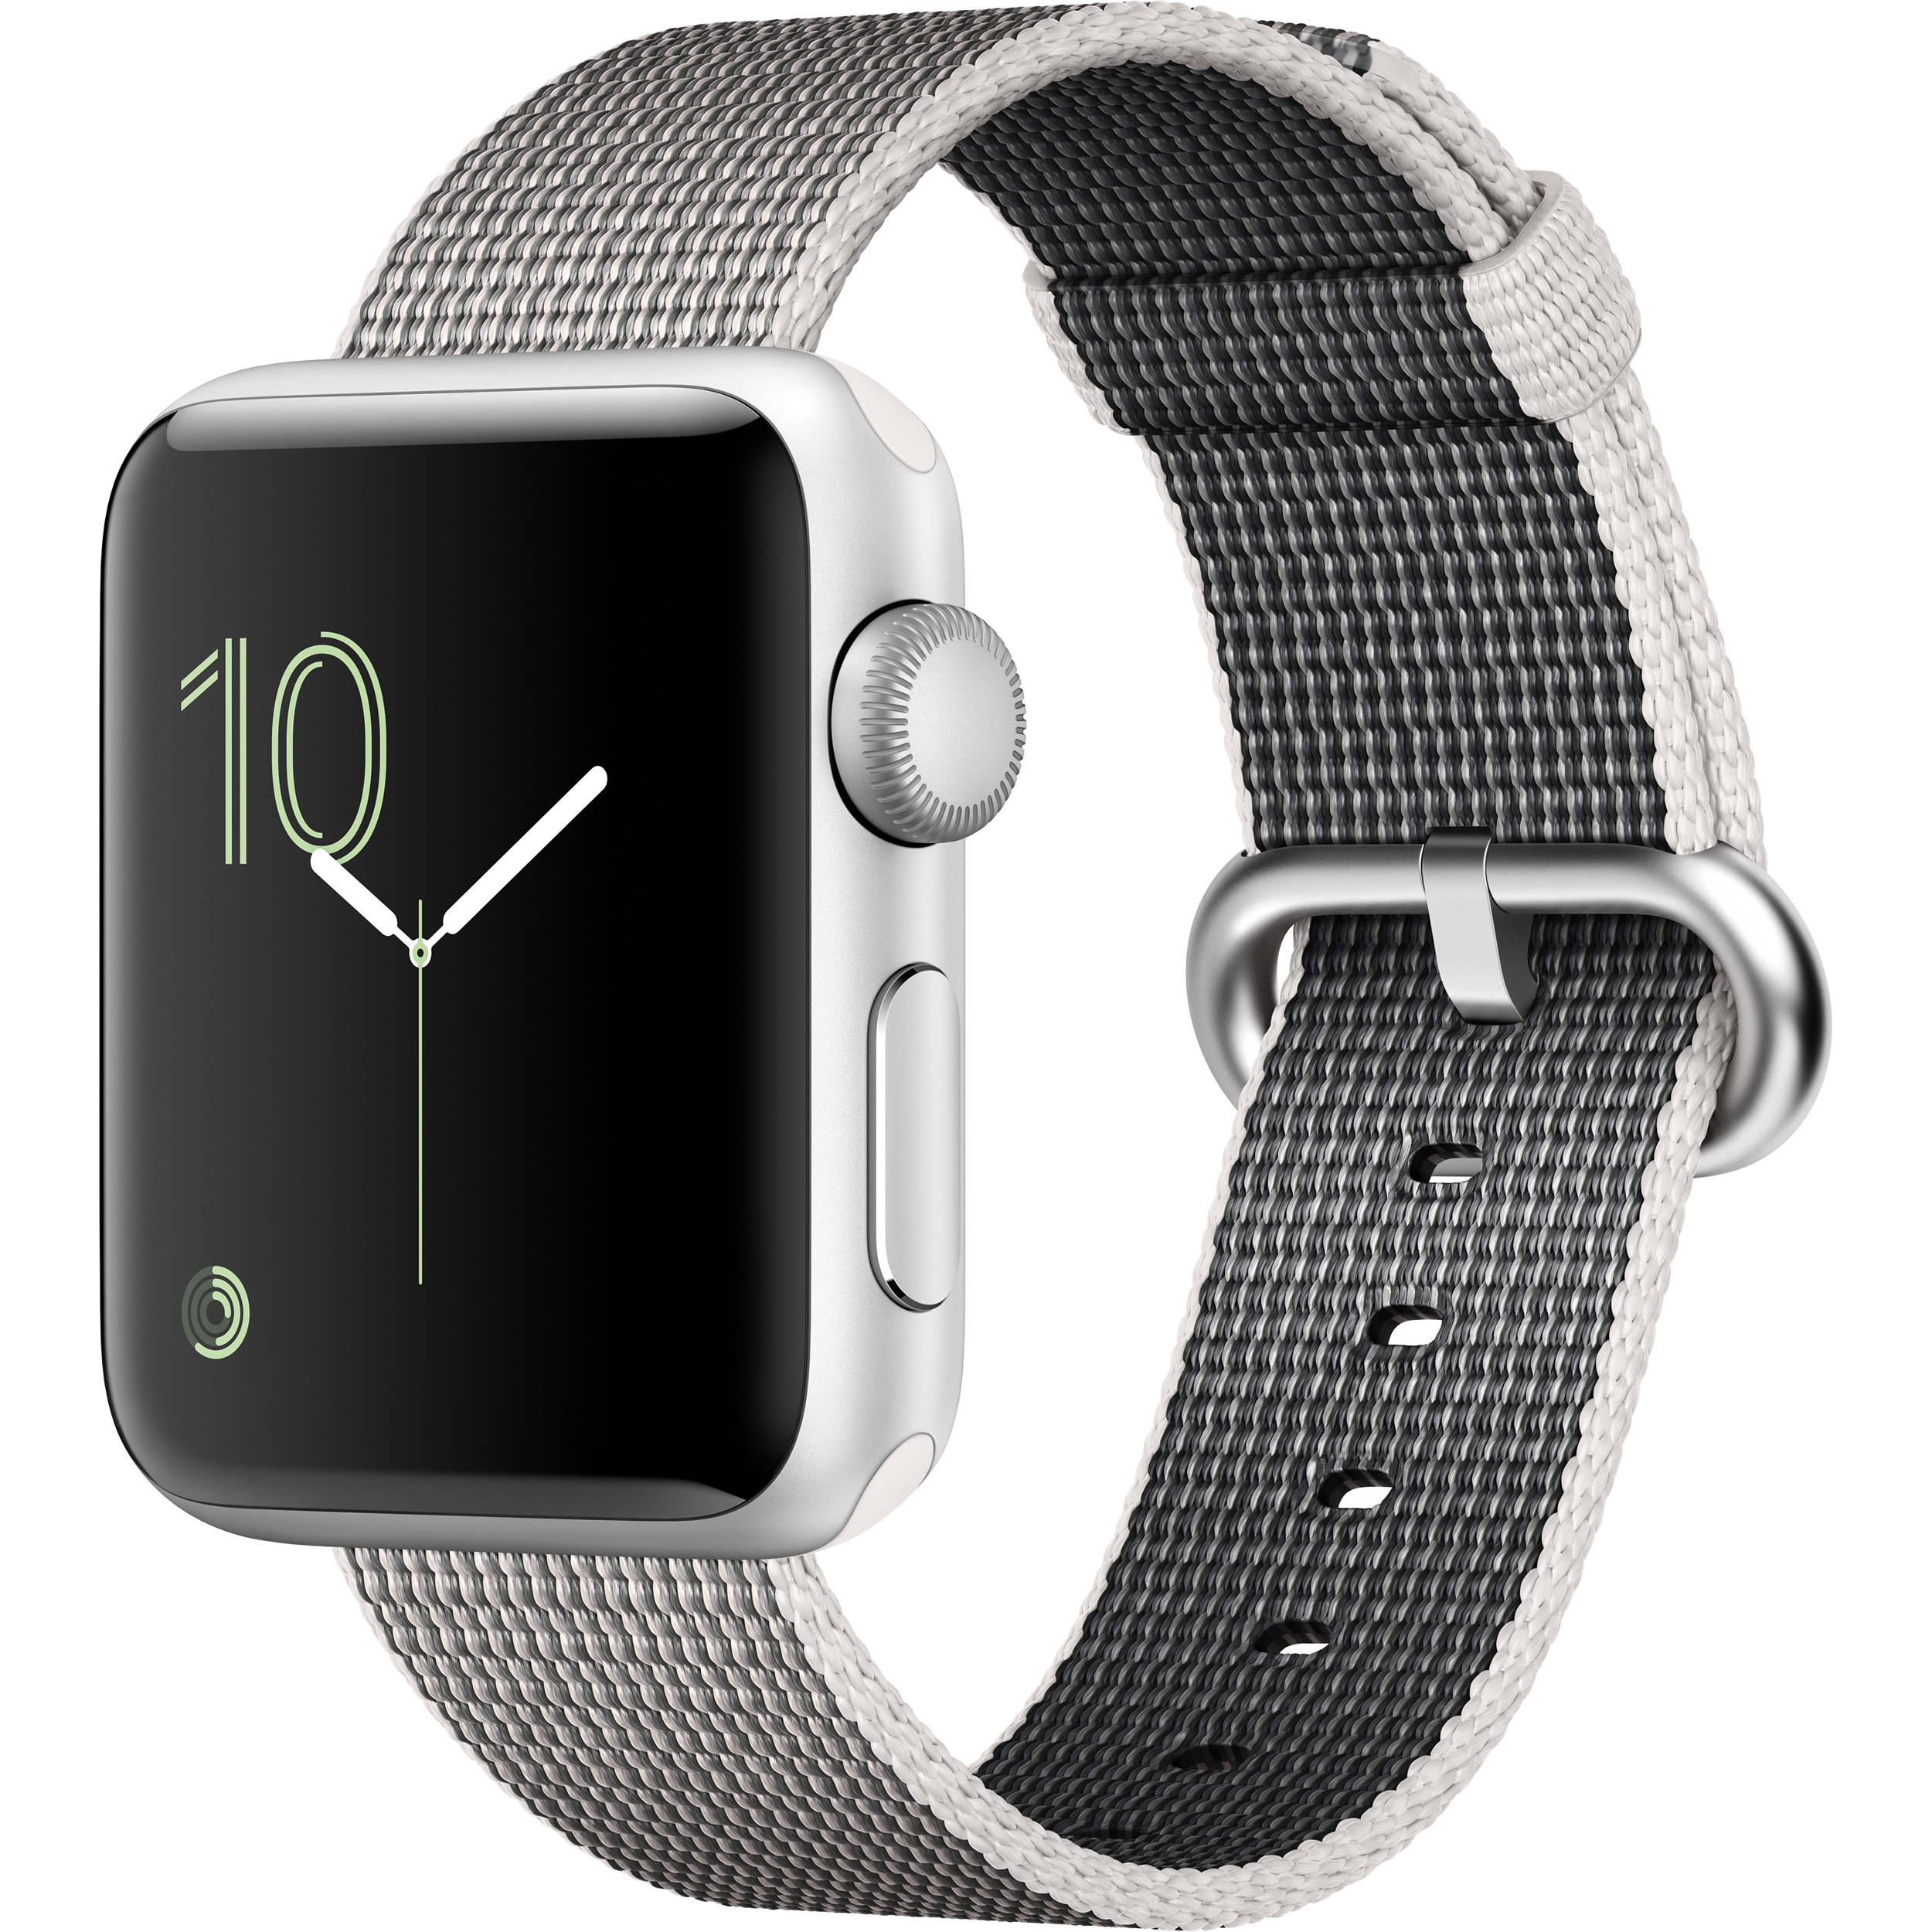 Смарт часы apple отзывы. Смарт часы эпл вотч. Apple watch Series 2. Эпл вотч 42мм. Часы Apple watch Series 2 38mm with Woven nylon.